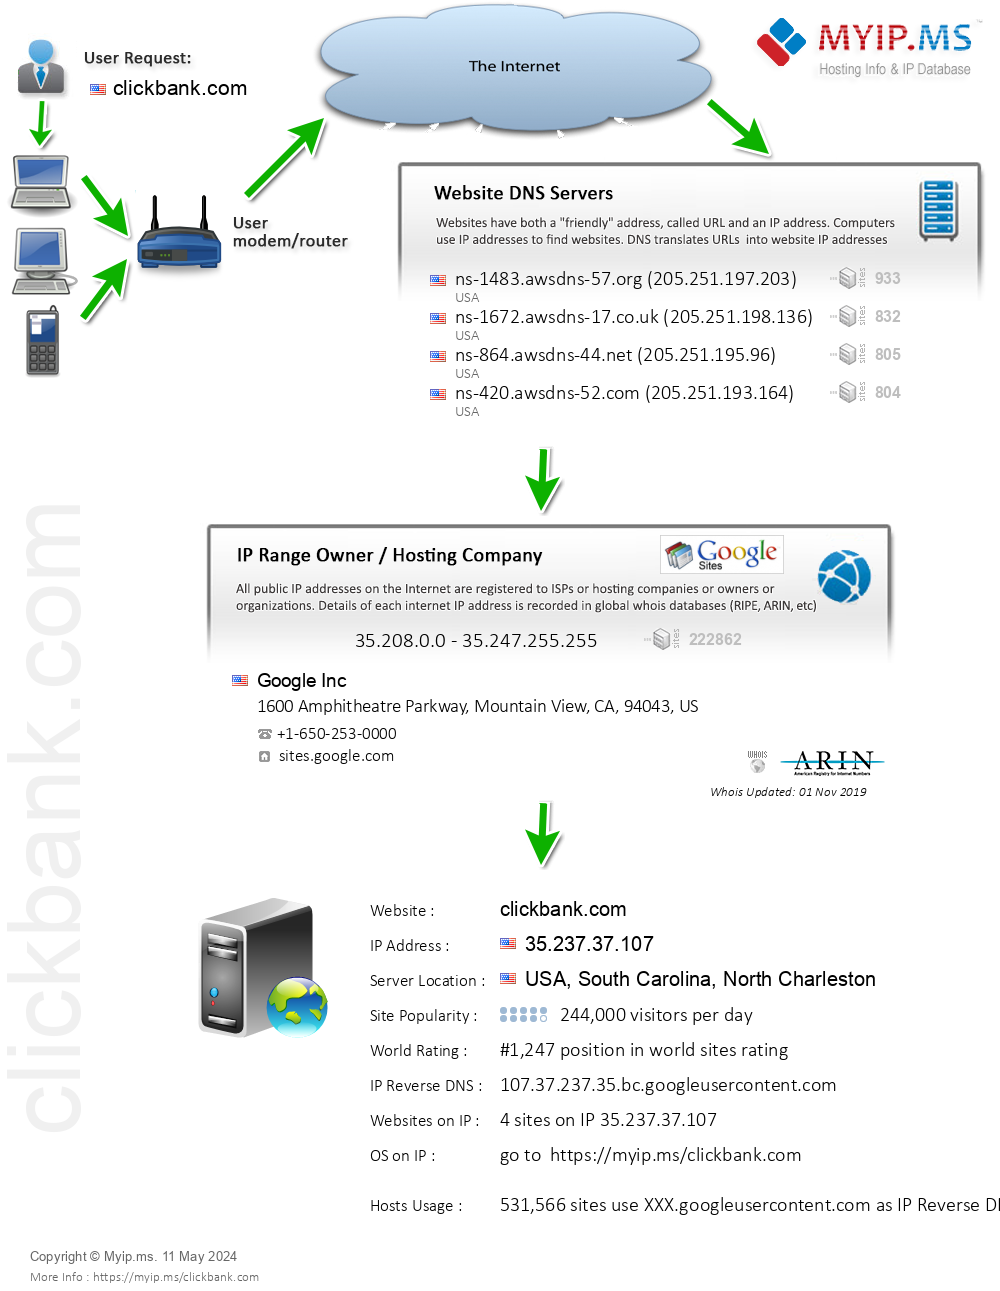 Clickbank.com - Website Hosting Visual IP Diagram